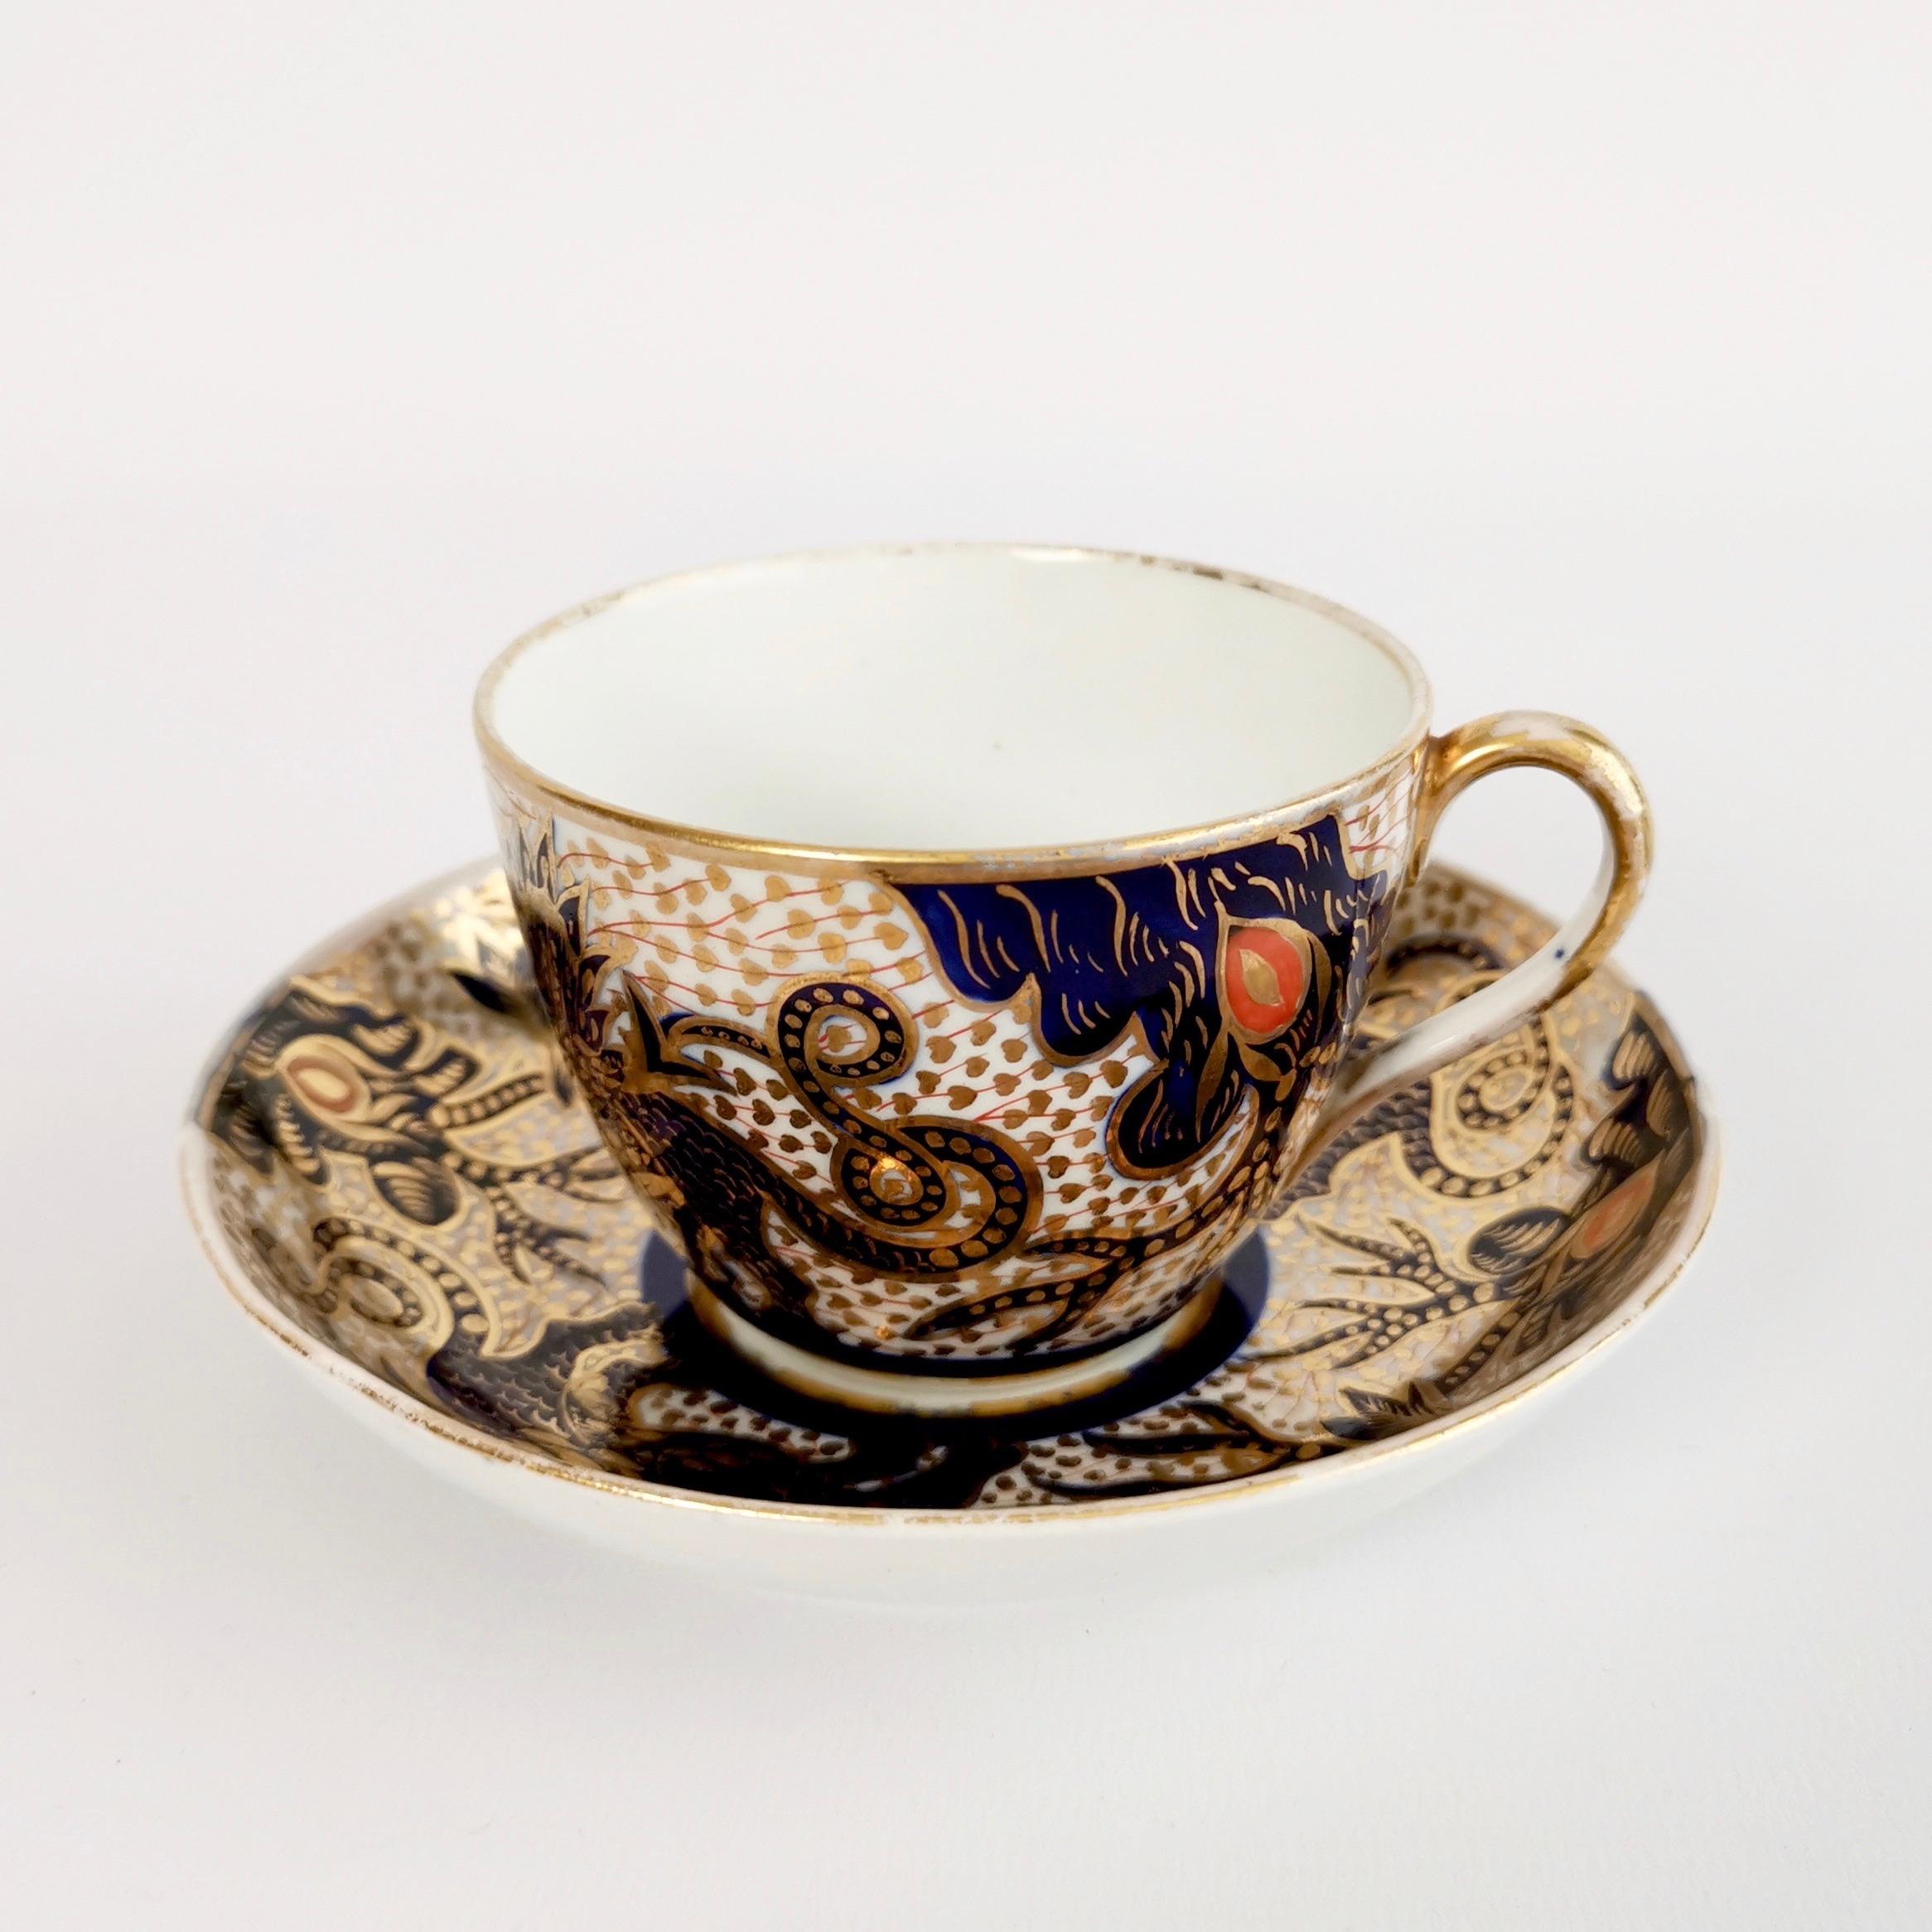 Porcelain Thomas Rose Coalport Tea Service, Japan Dragon Patt. 352, Georgian, circa 1800